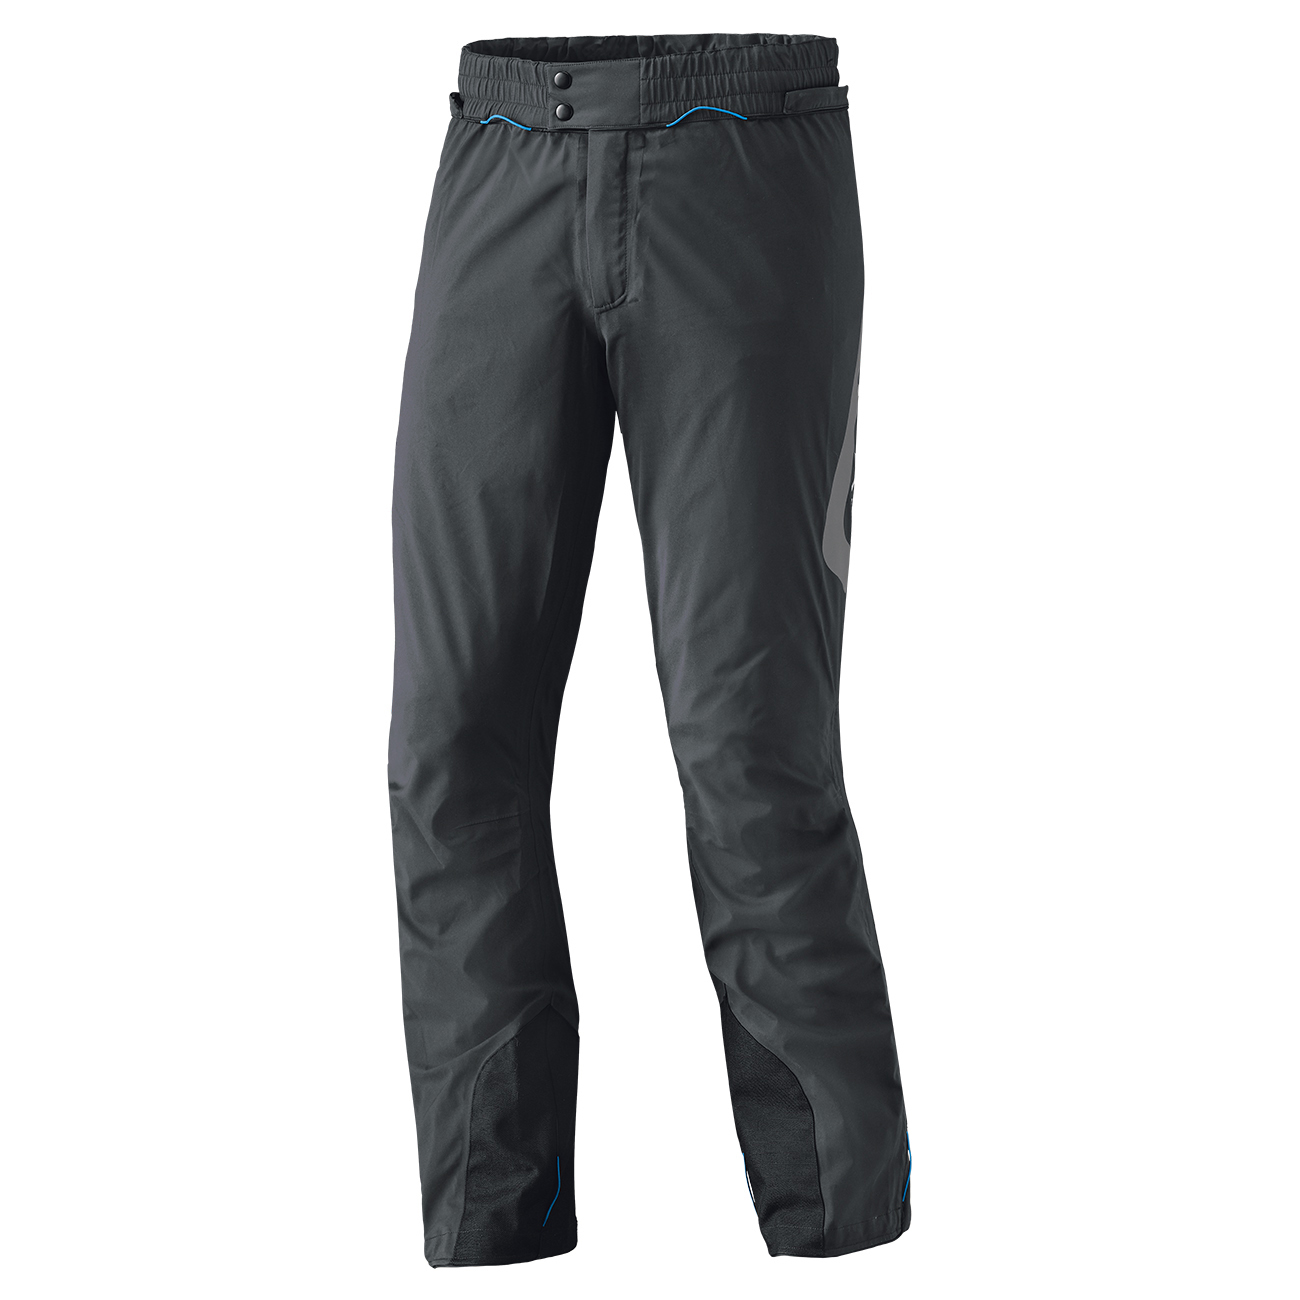 Clip-in GTX BASE GORE-TEX® Packlite pantalon